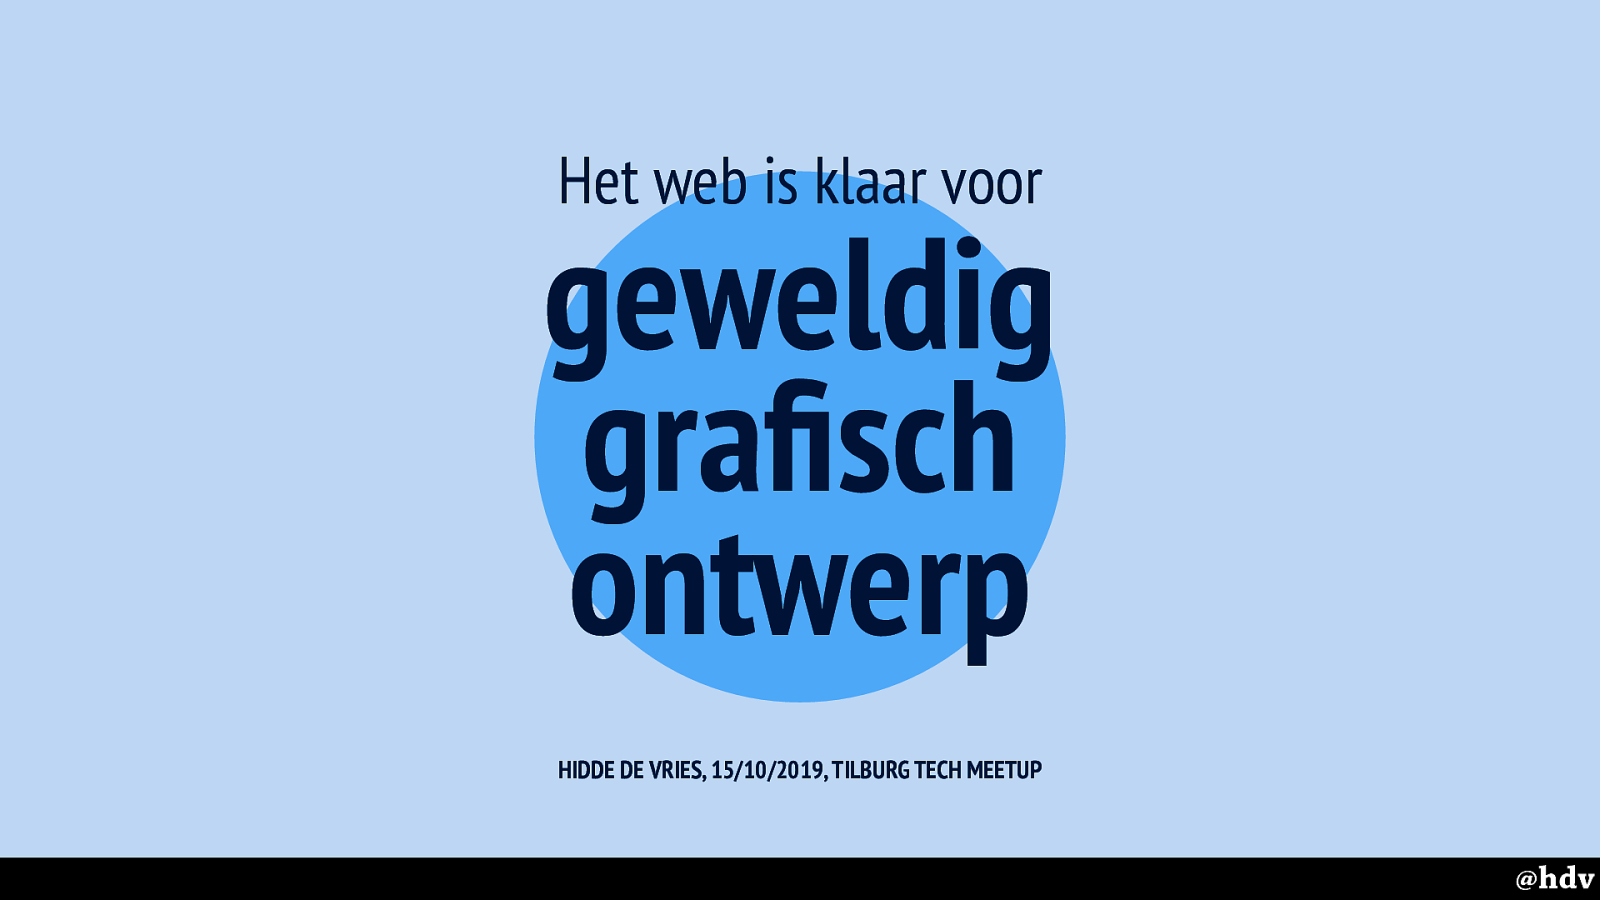 (Dutch) Het web is klaar voor geweldig grafisch ontwerp